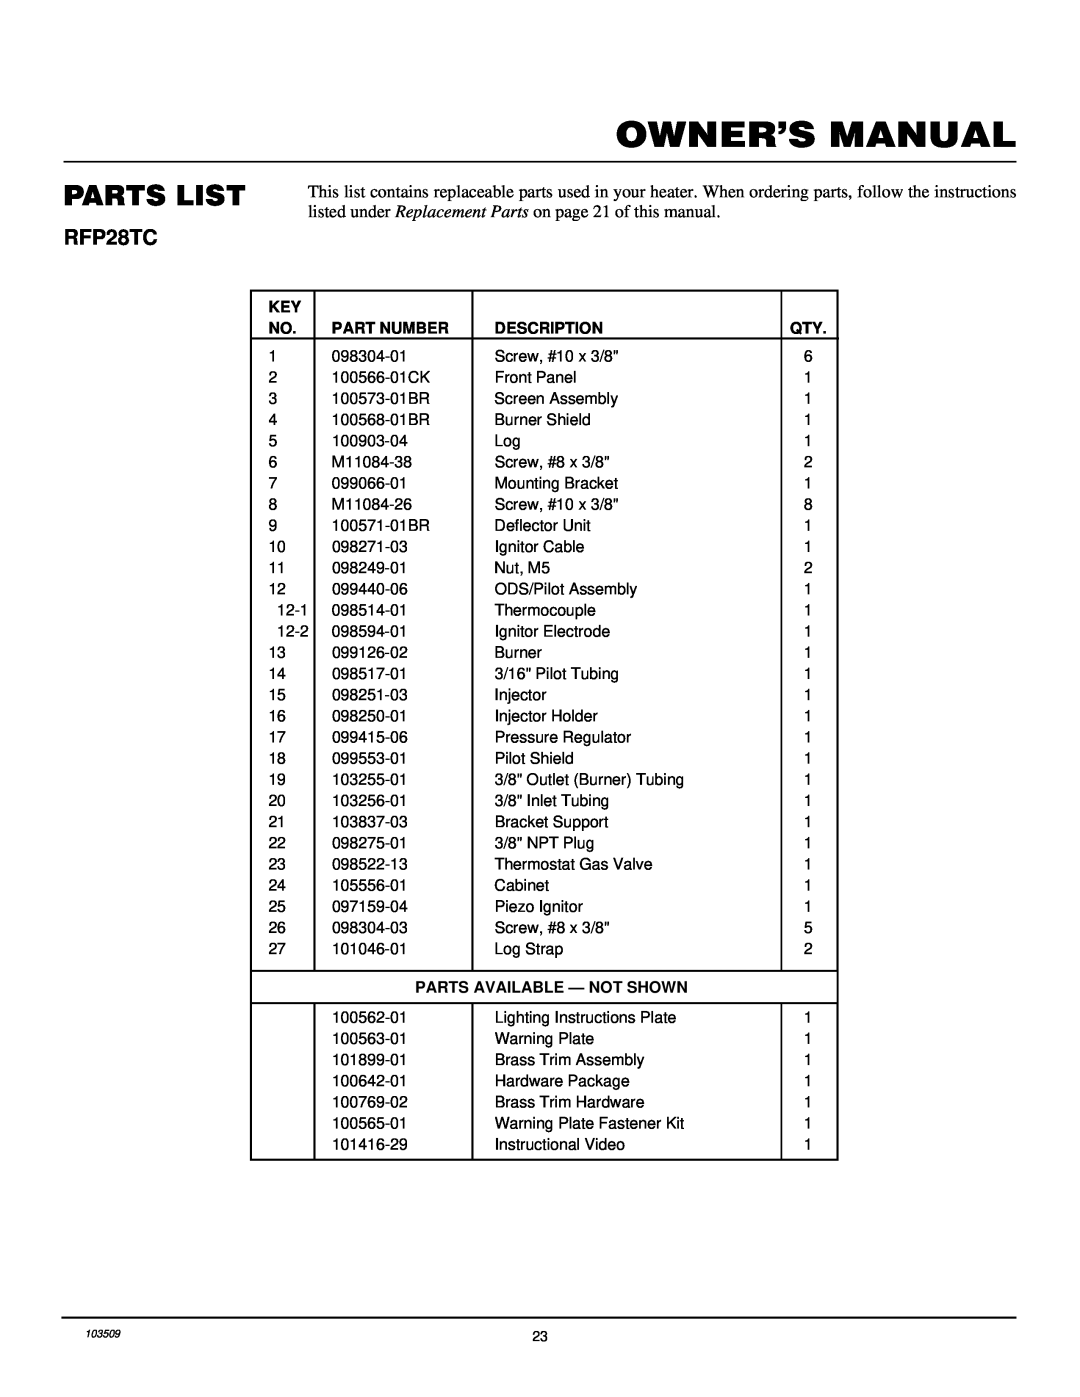 Desa Tech RFP28TC installation manual Parts List, Part Number, Description, Parts Available - Not Shown 